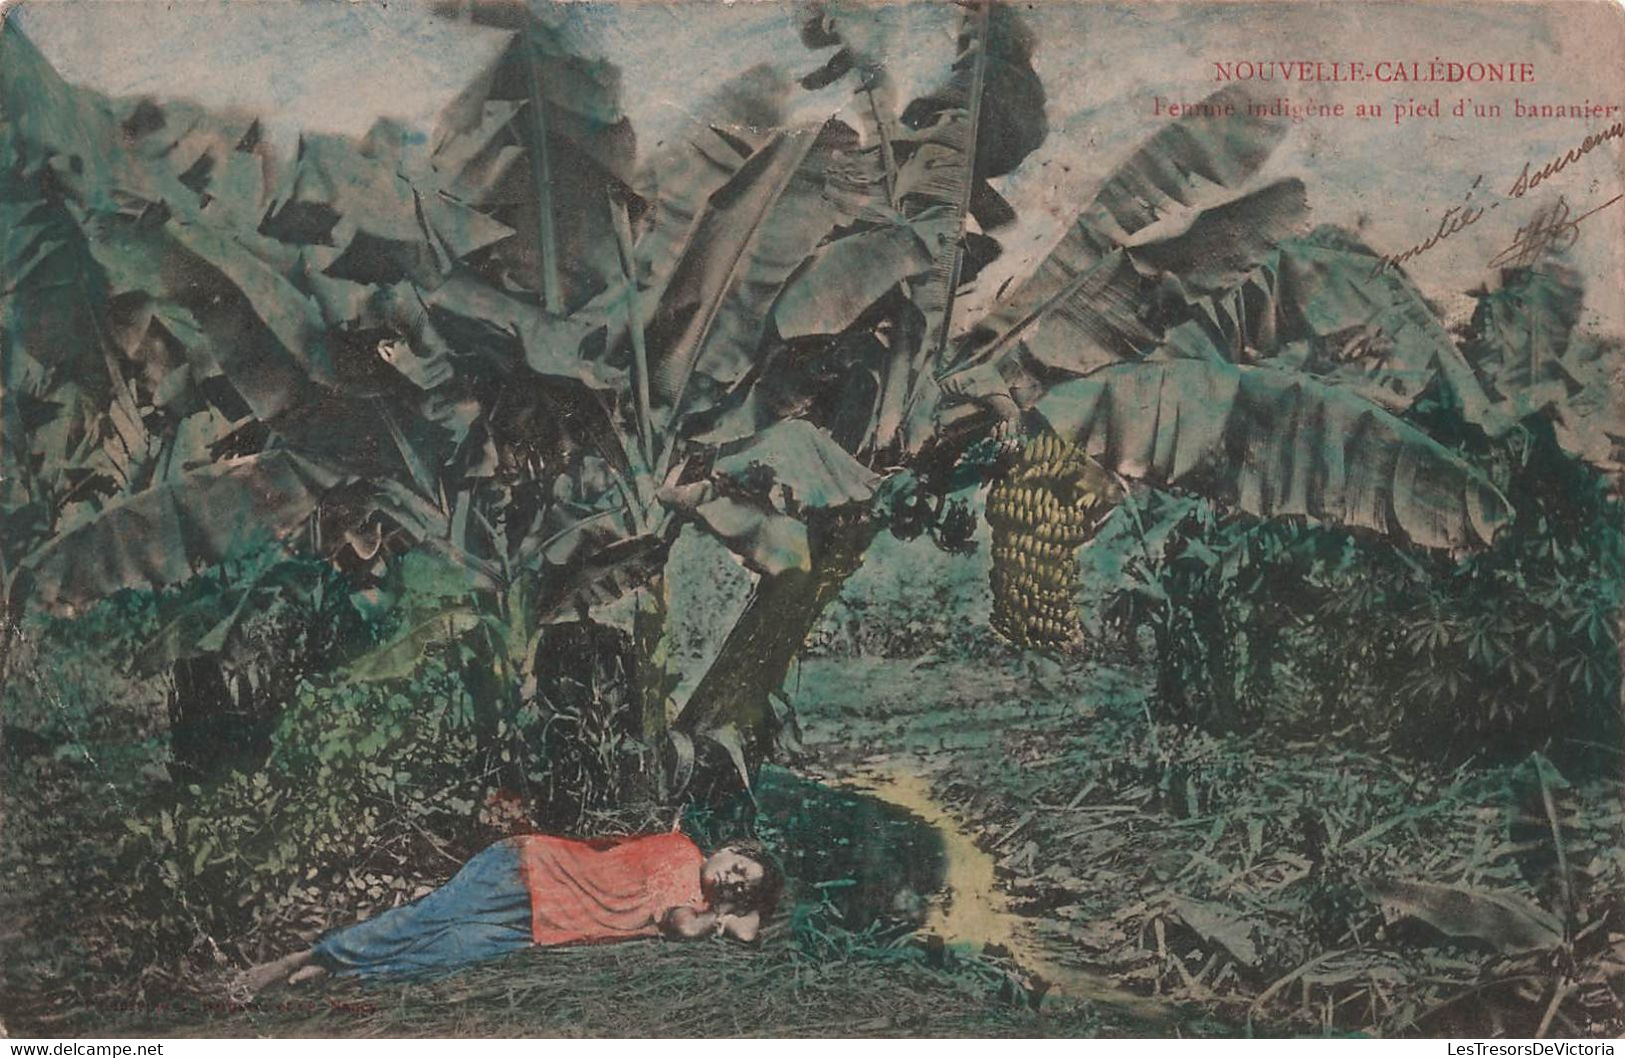 Nouvelle Calédonie - Femme Indigene Au Pied D'un Bananier - Colorisée - RARE - Timbre Taxe - Carte Postale Ancienne - New Caledonia